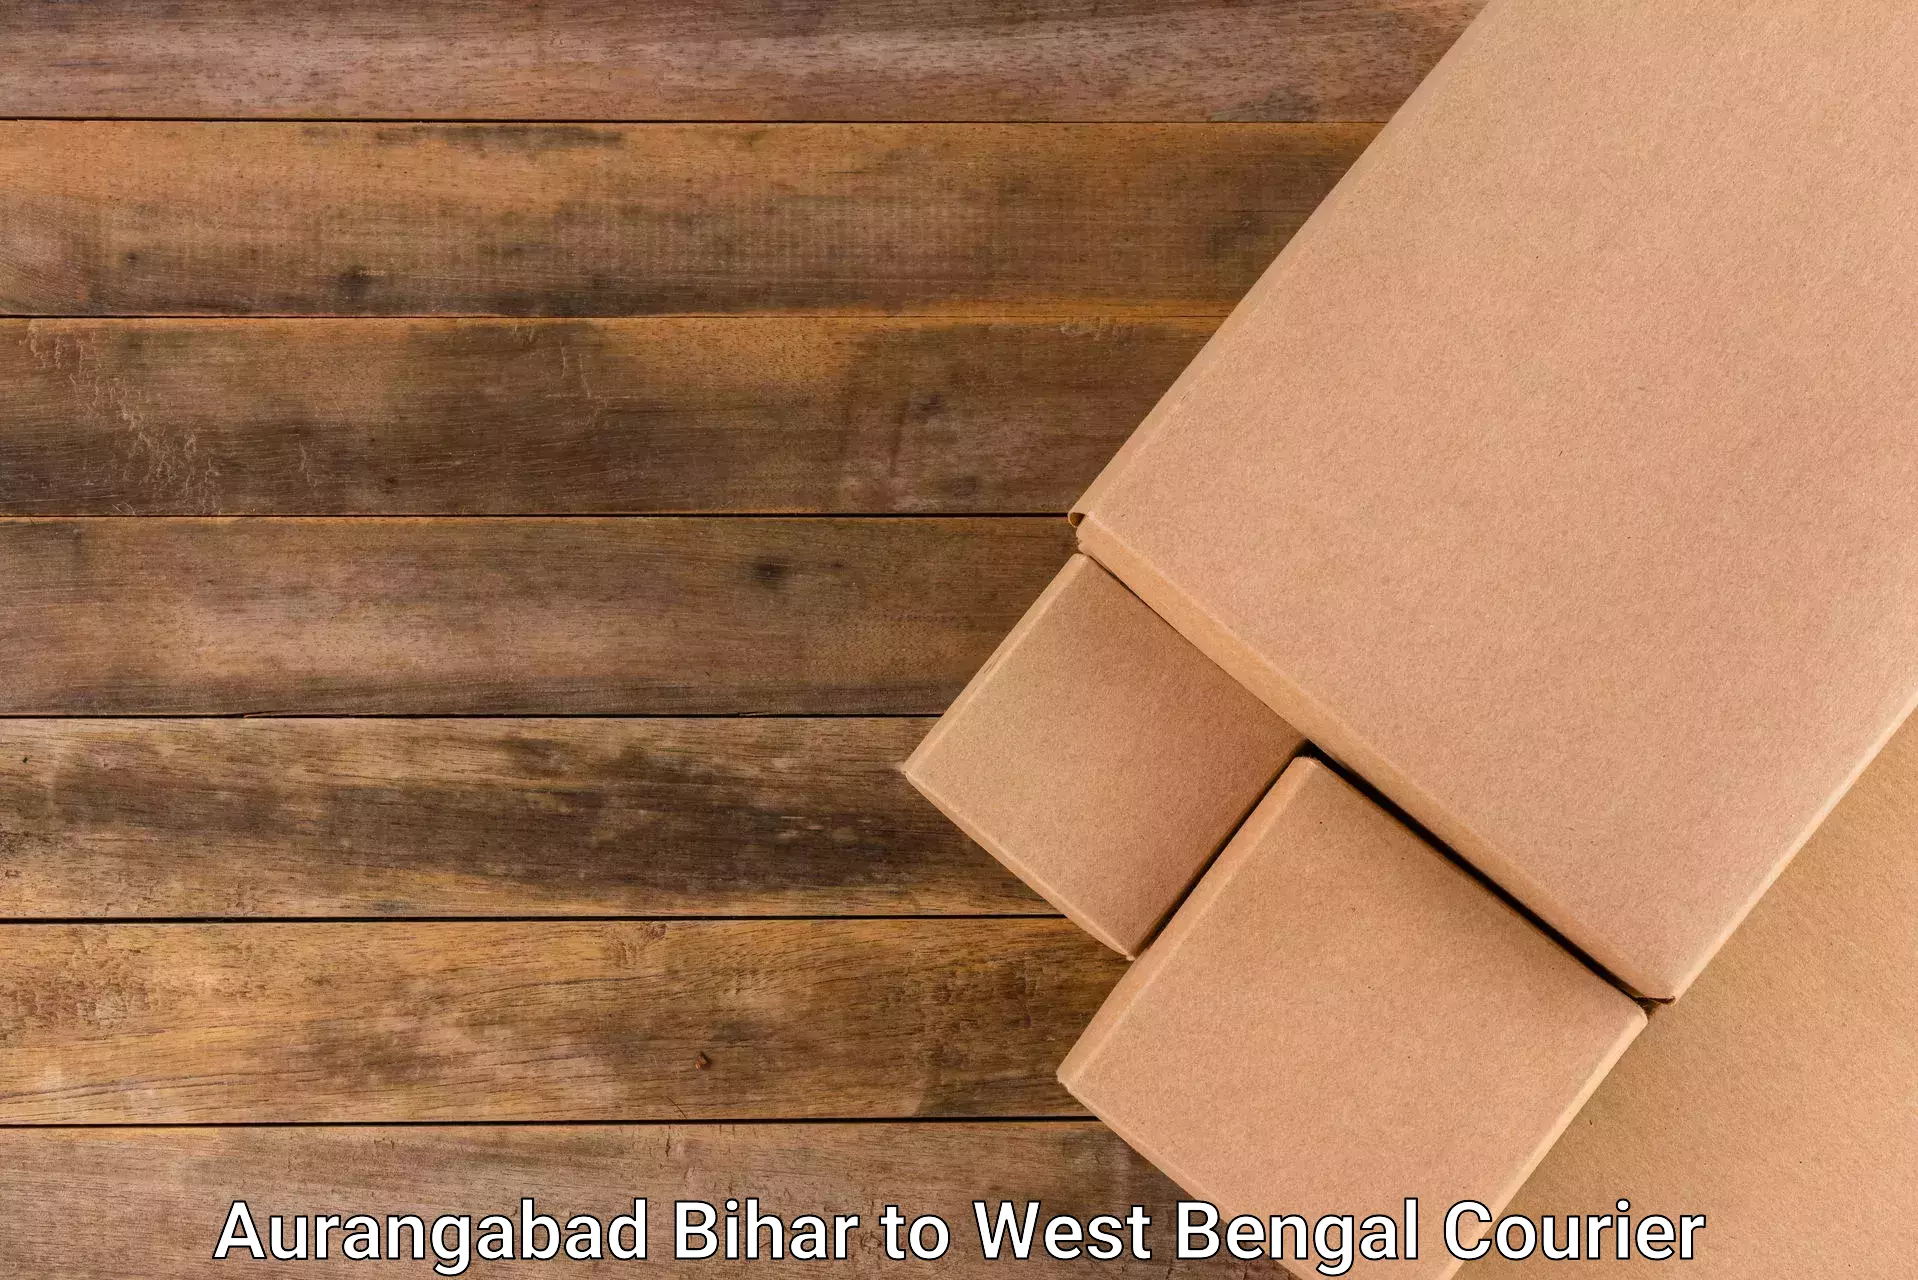 Integrated courier services Aurangabad Bihar to Darjeeling